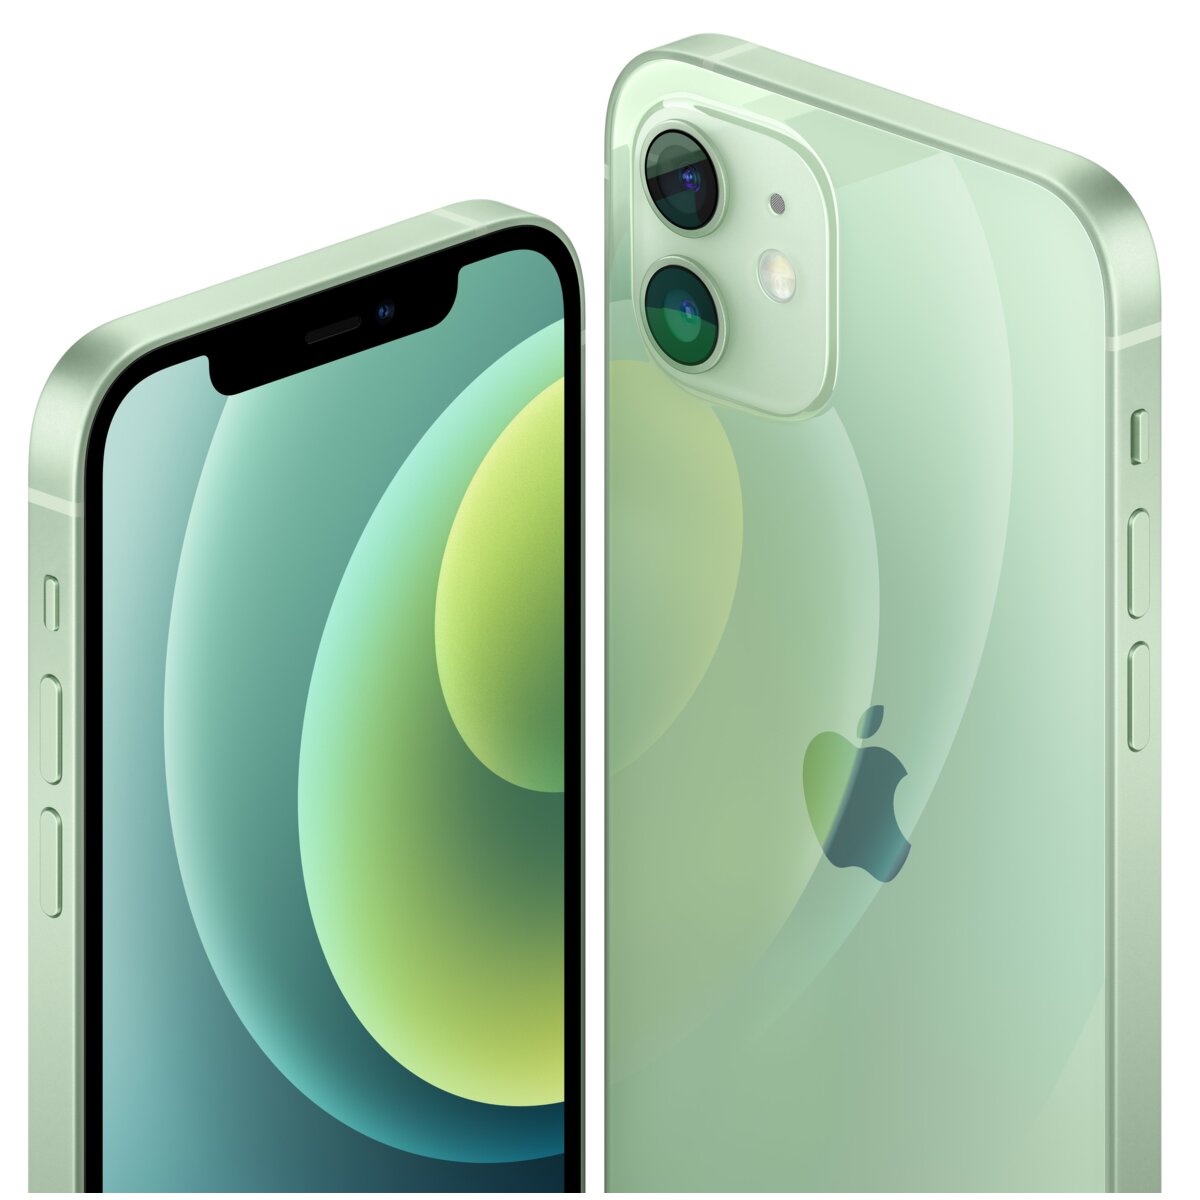 APPLE iPhone 12 mini 64GB Zielony 5G Smartfon - ceny i opinie w Media